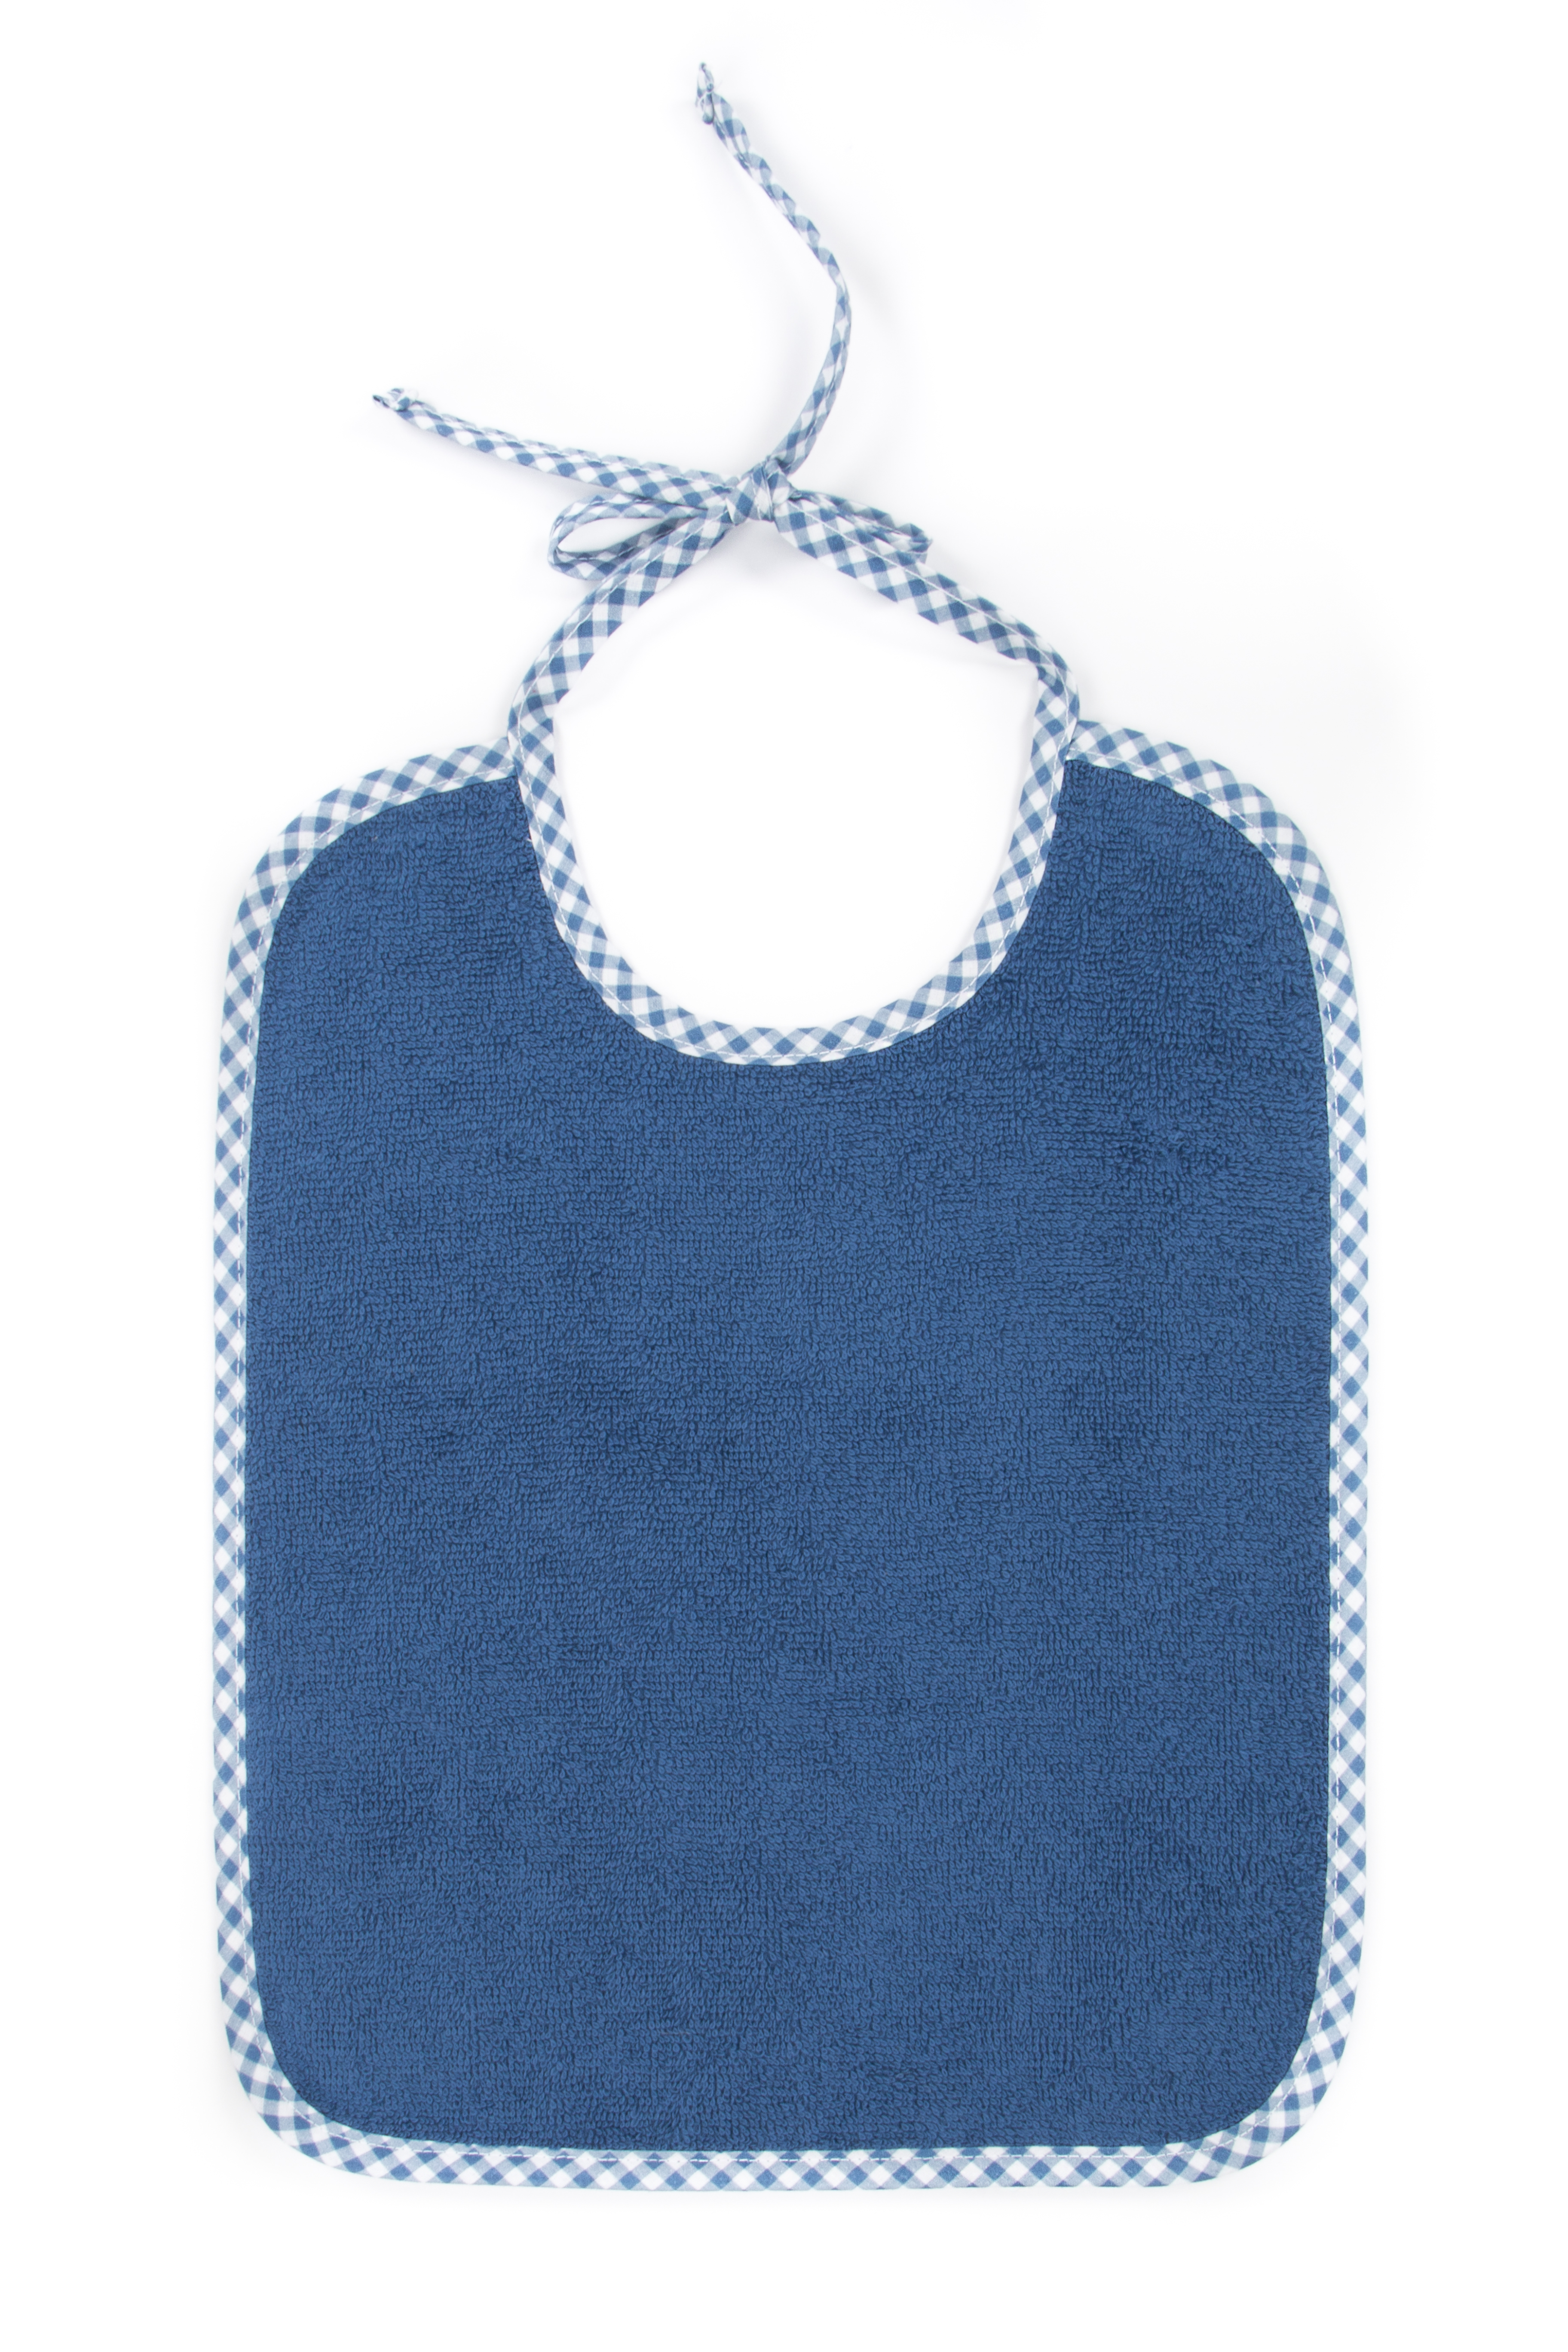 Bavoir with straps Boy, uni blue, 35x27 cm